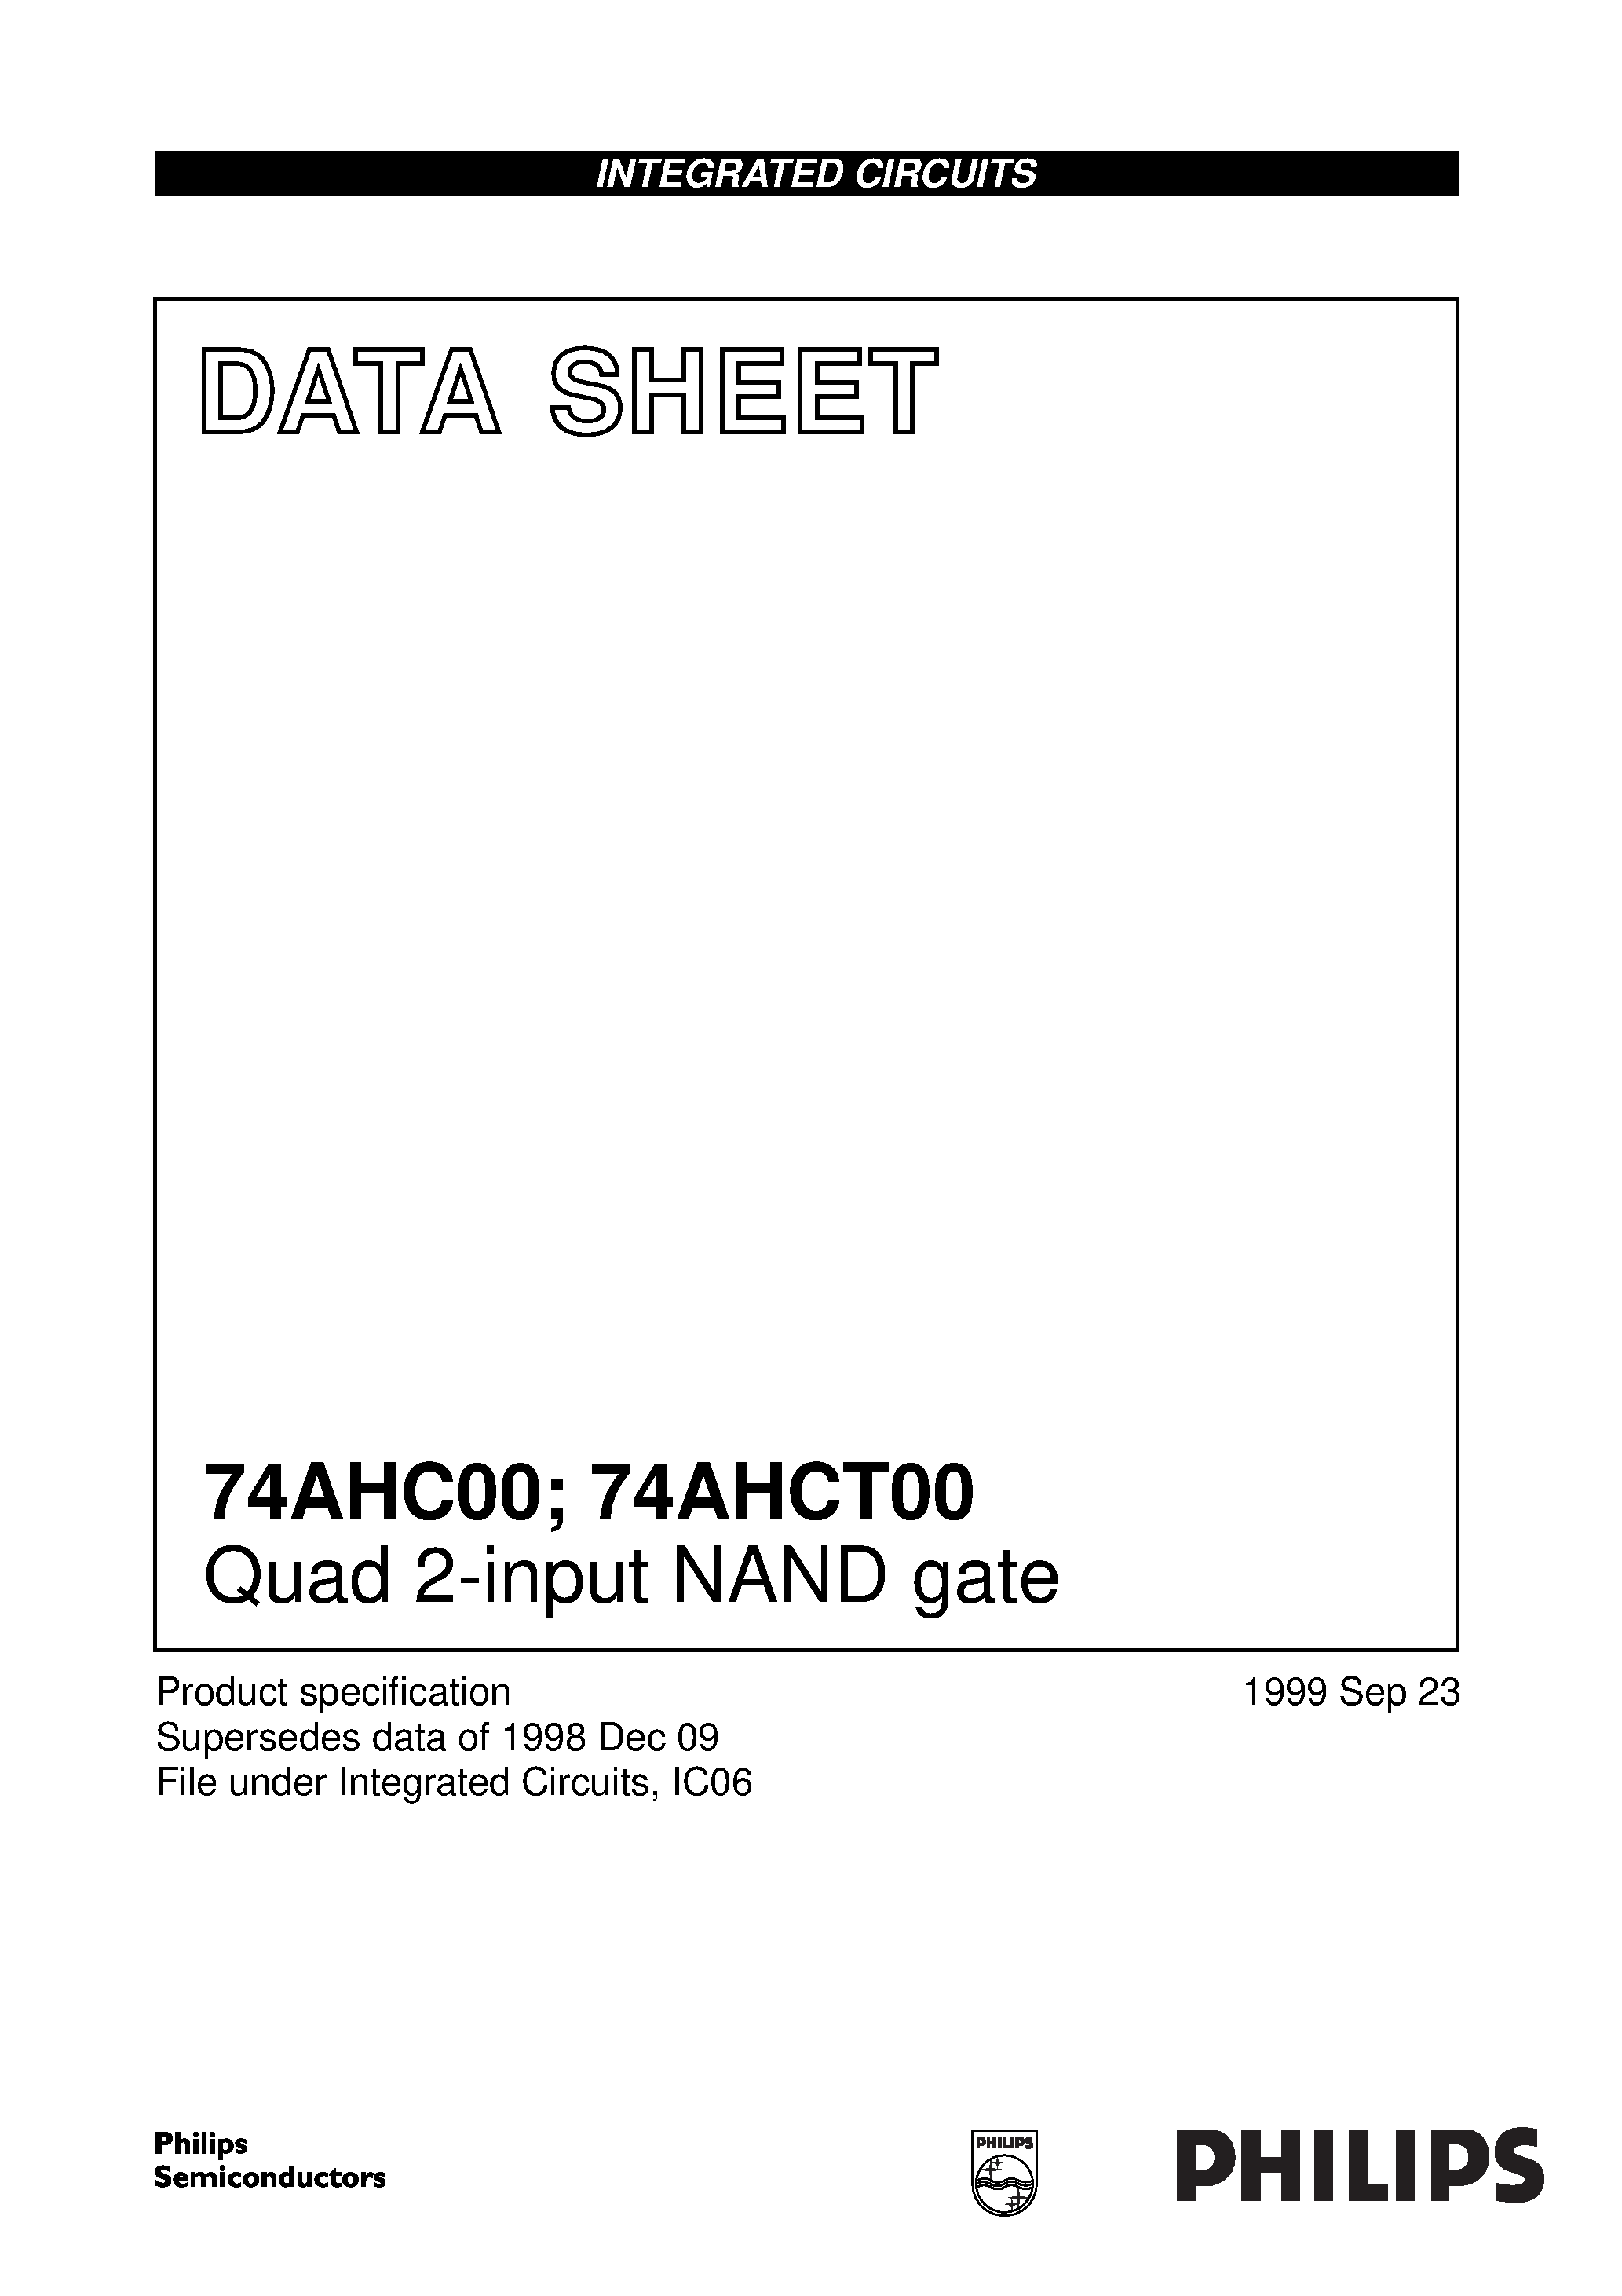 Даташит 74AHC00 - Quad 2-input NAND gate страница 1